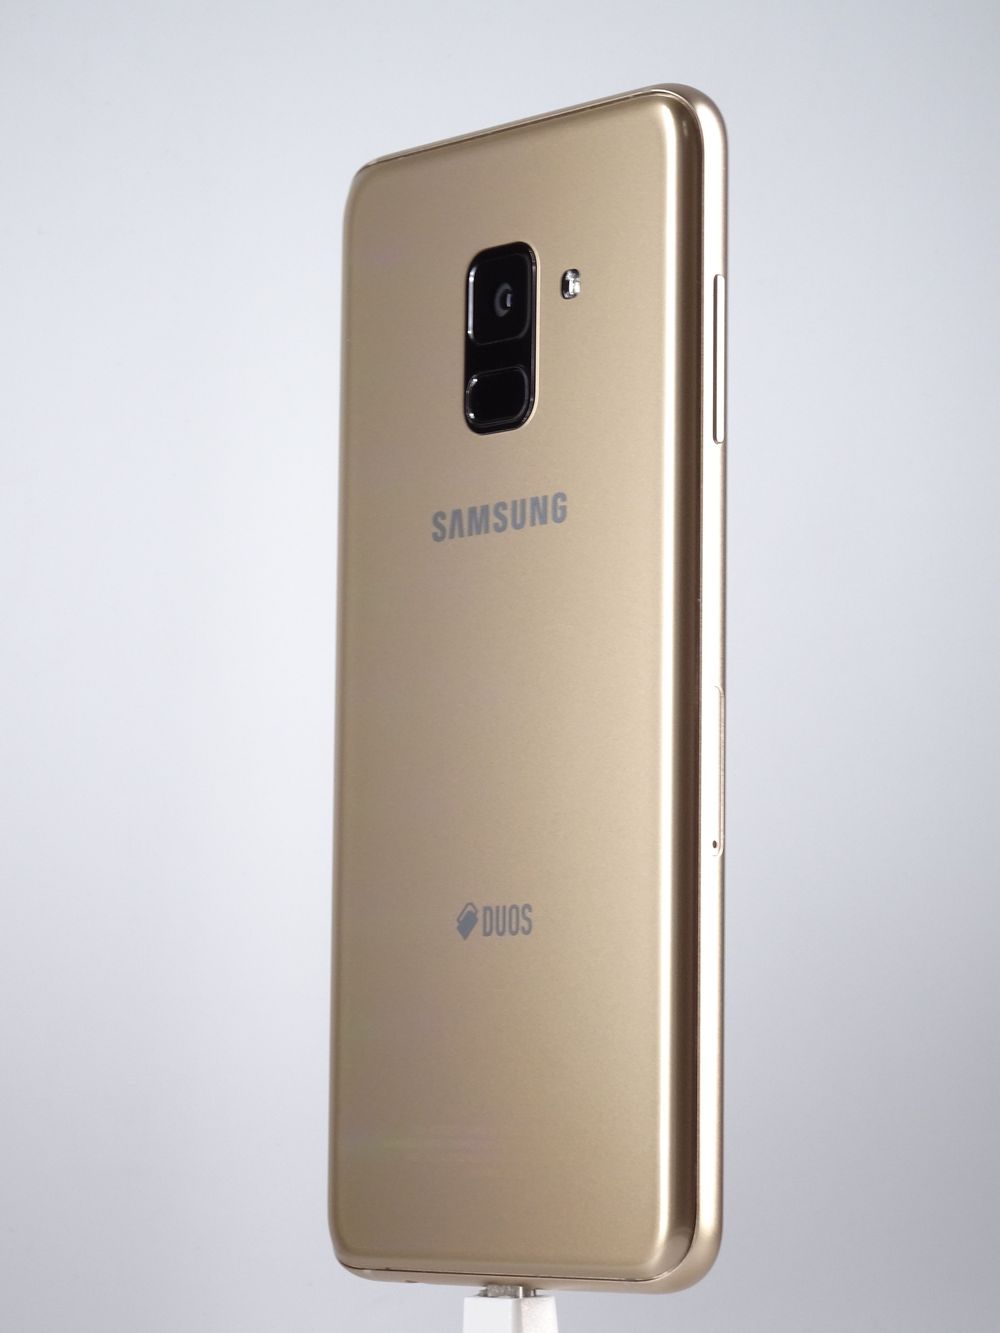 Мобилен телефон Samsung, Galaxy A8 (2018) Dual Sim, 32 GB, Gold,  Като нов